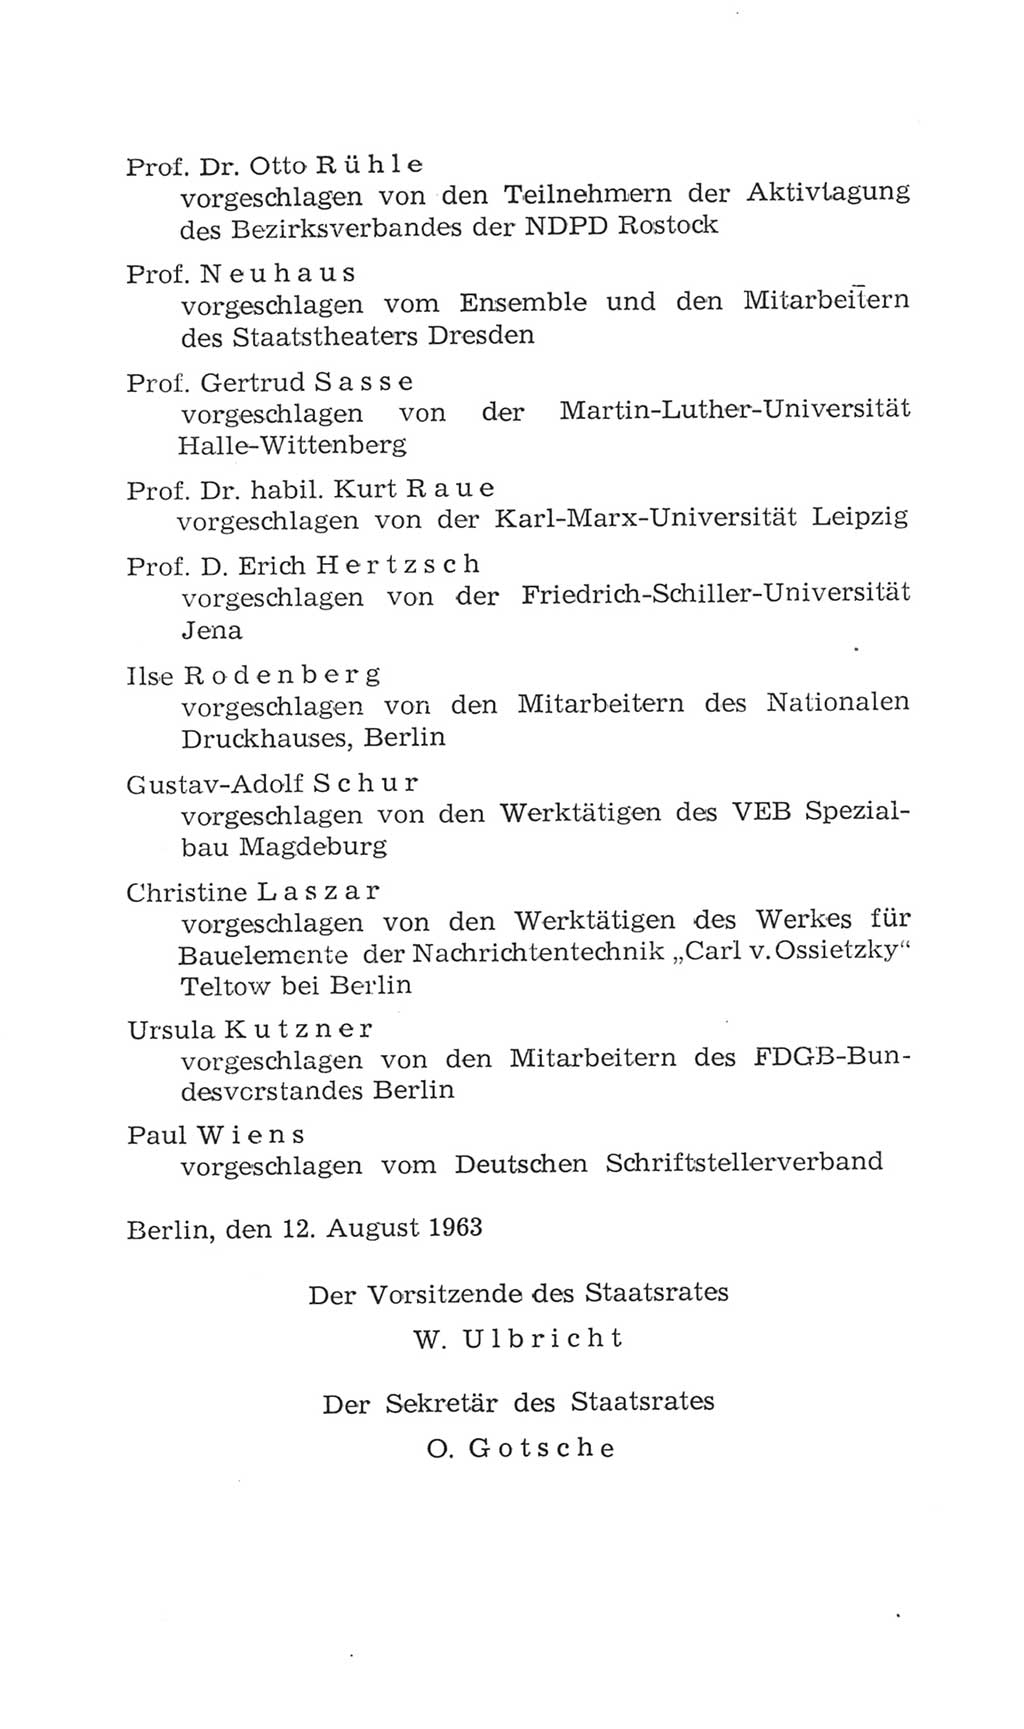 Volkskammer (VK) der Deutschen Demokratischen Republik (DDR), 4. Wahlperiode 1963-1967, Seite 66 (VK. DDR 4. WP. 1963-1967, S. 66)